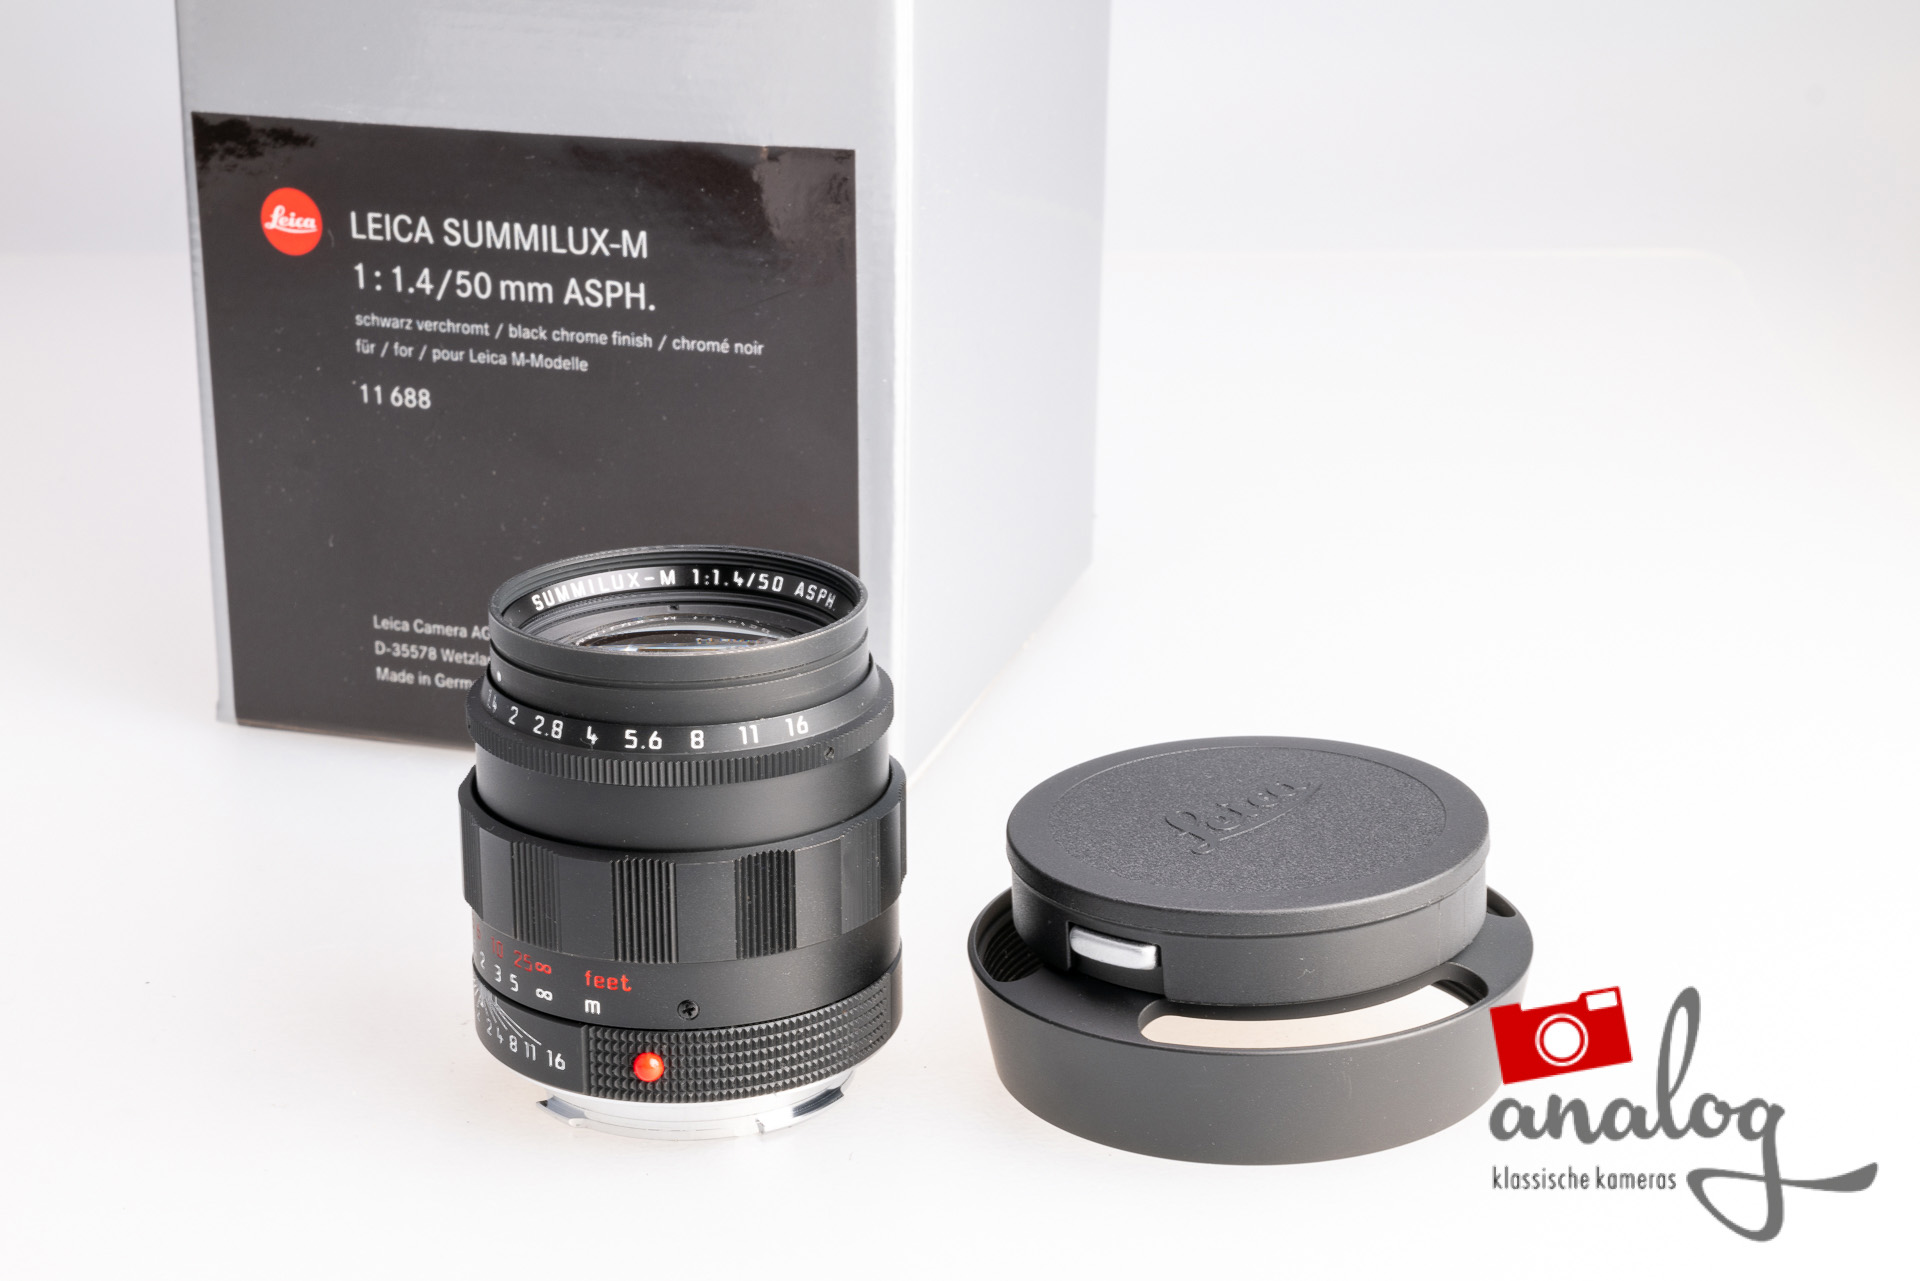 Leica Summilux-M 50mm 1.4 - Retro Style - schwarz verchromt - 11688 - aktueller Leica Service